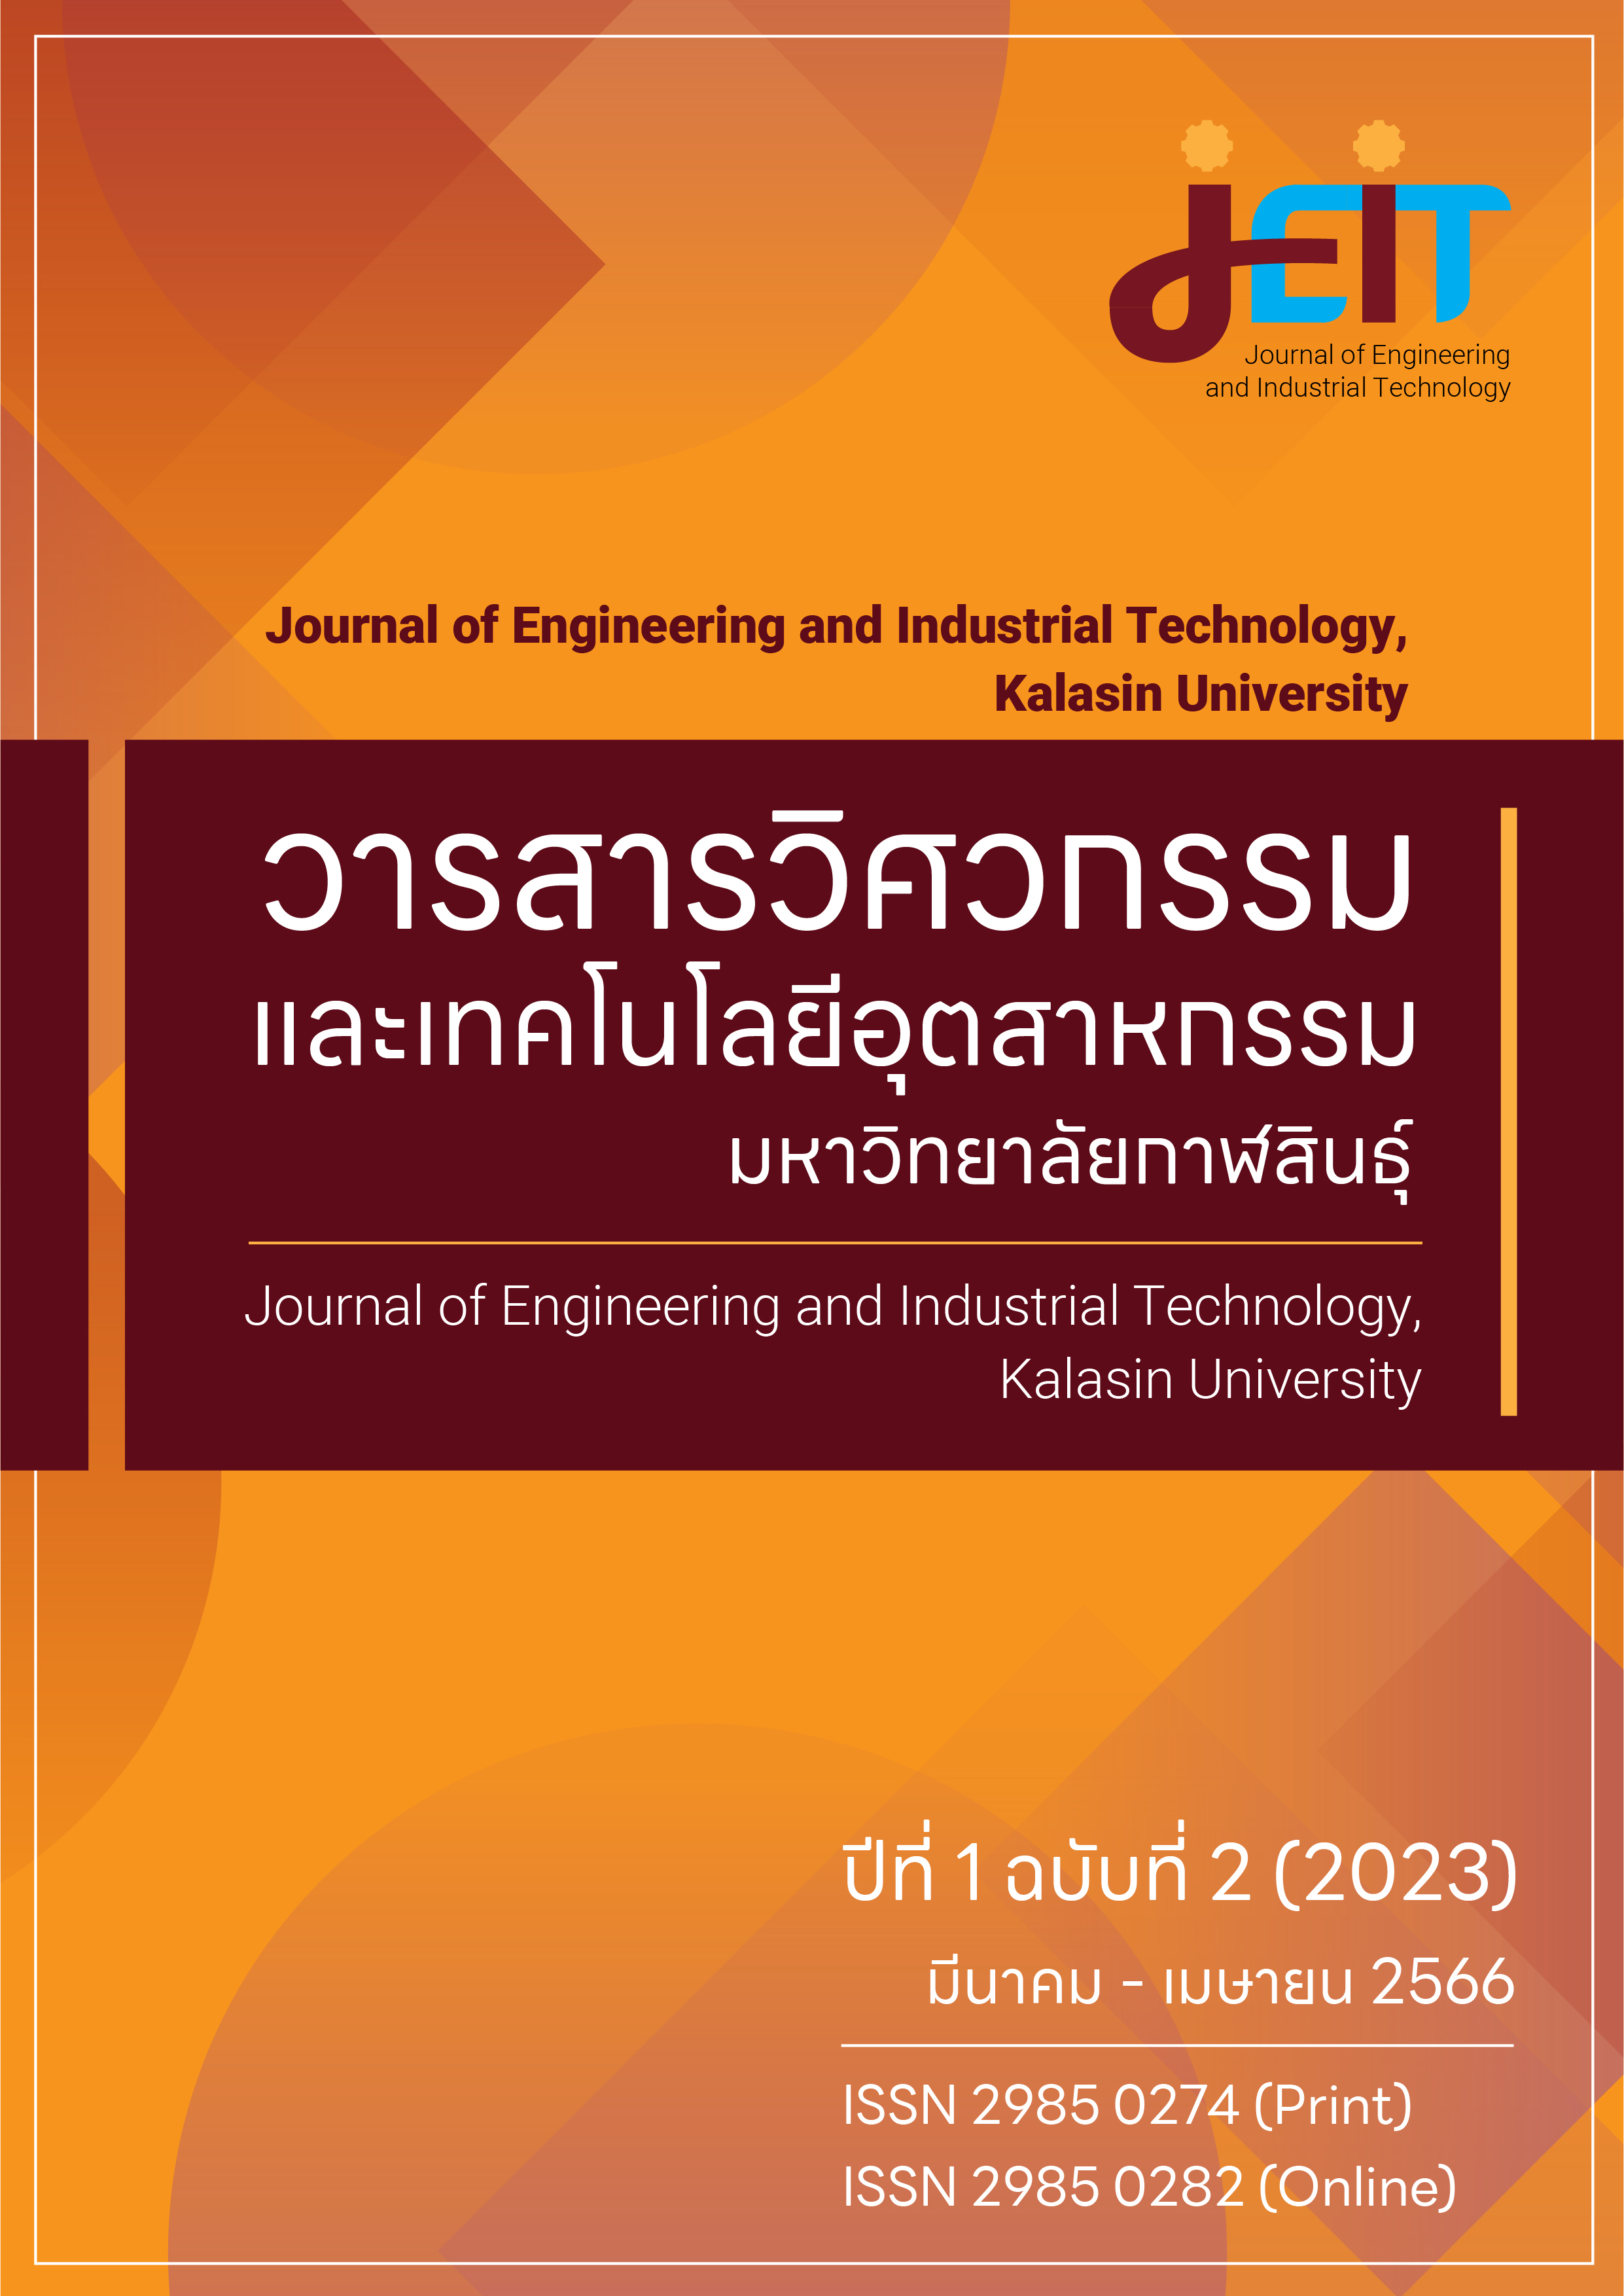 					ดู ปีที่ 1 ฉบับที่ 2 (2023): วารสารวิศวกรรมและเทคโนโลยีอุตสาหกรรม มหาวิทยาลัยกาฬสินธุ์ ปีที่ 1 ฉบับที่ 2 (มีนาคม - เมษายน 2566)
				